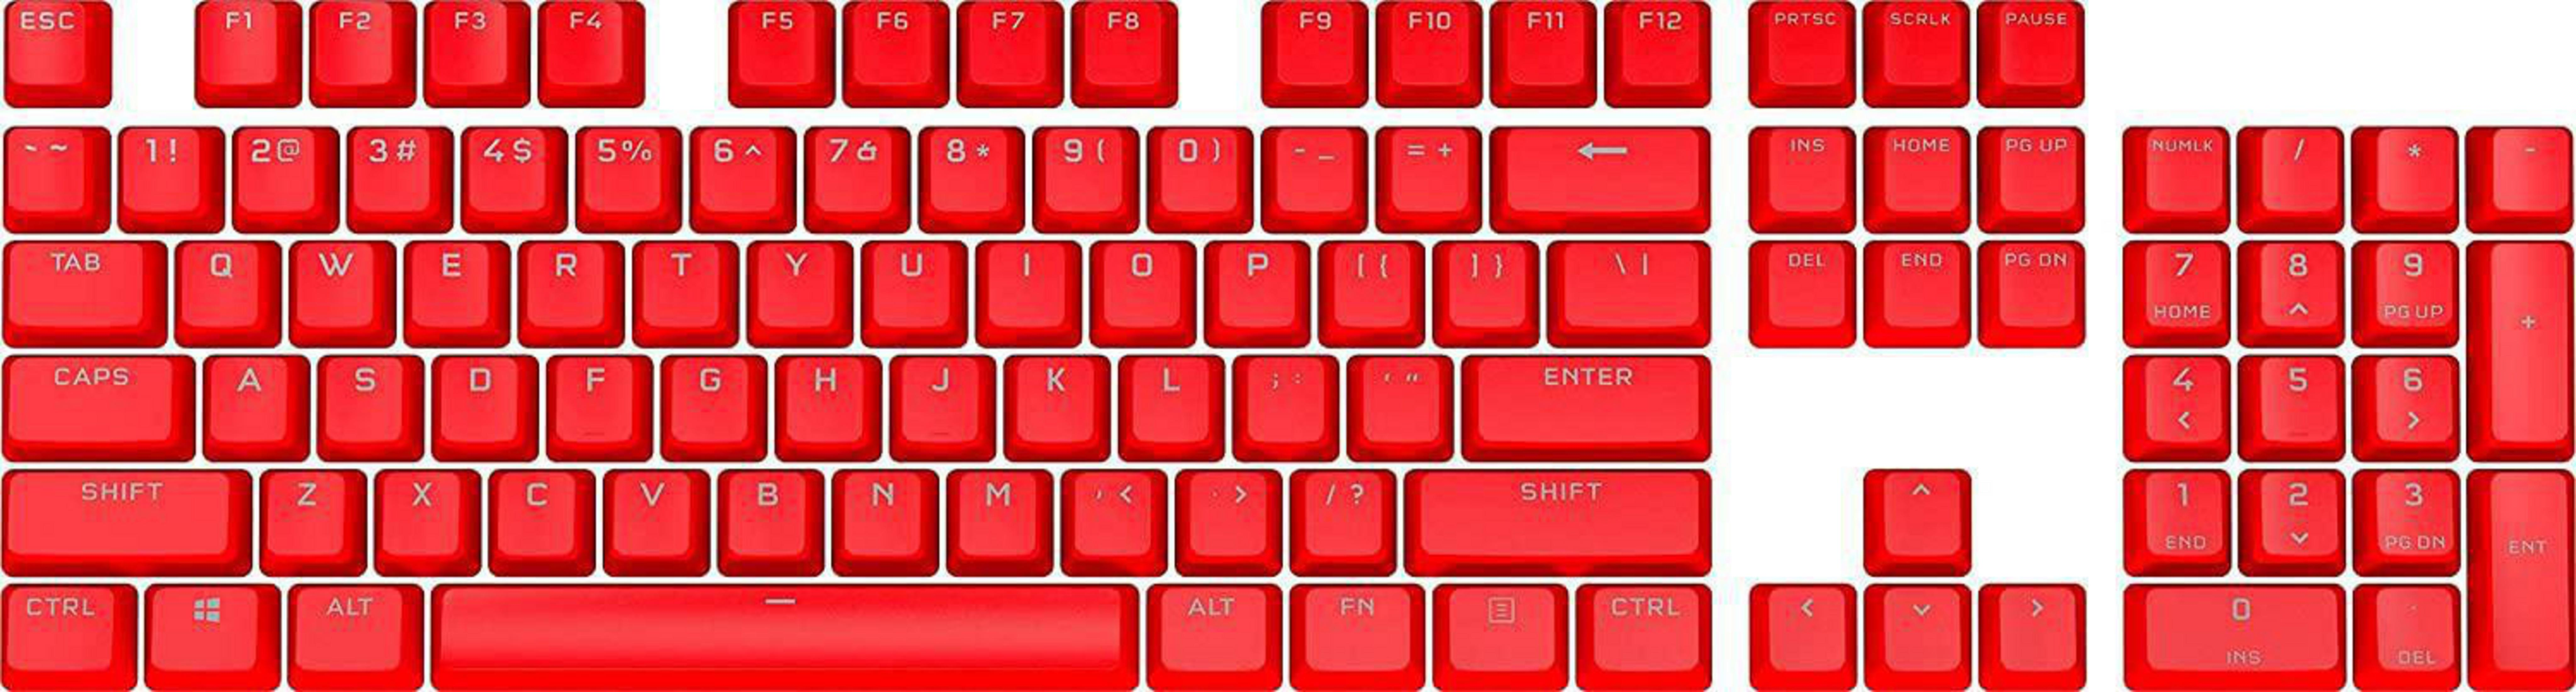 RED CH-9911020-DE PBT Tastatur PRO K, DOUBLE-SHOT MOD CORSAIR Gaming KEYCAP